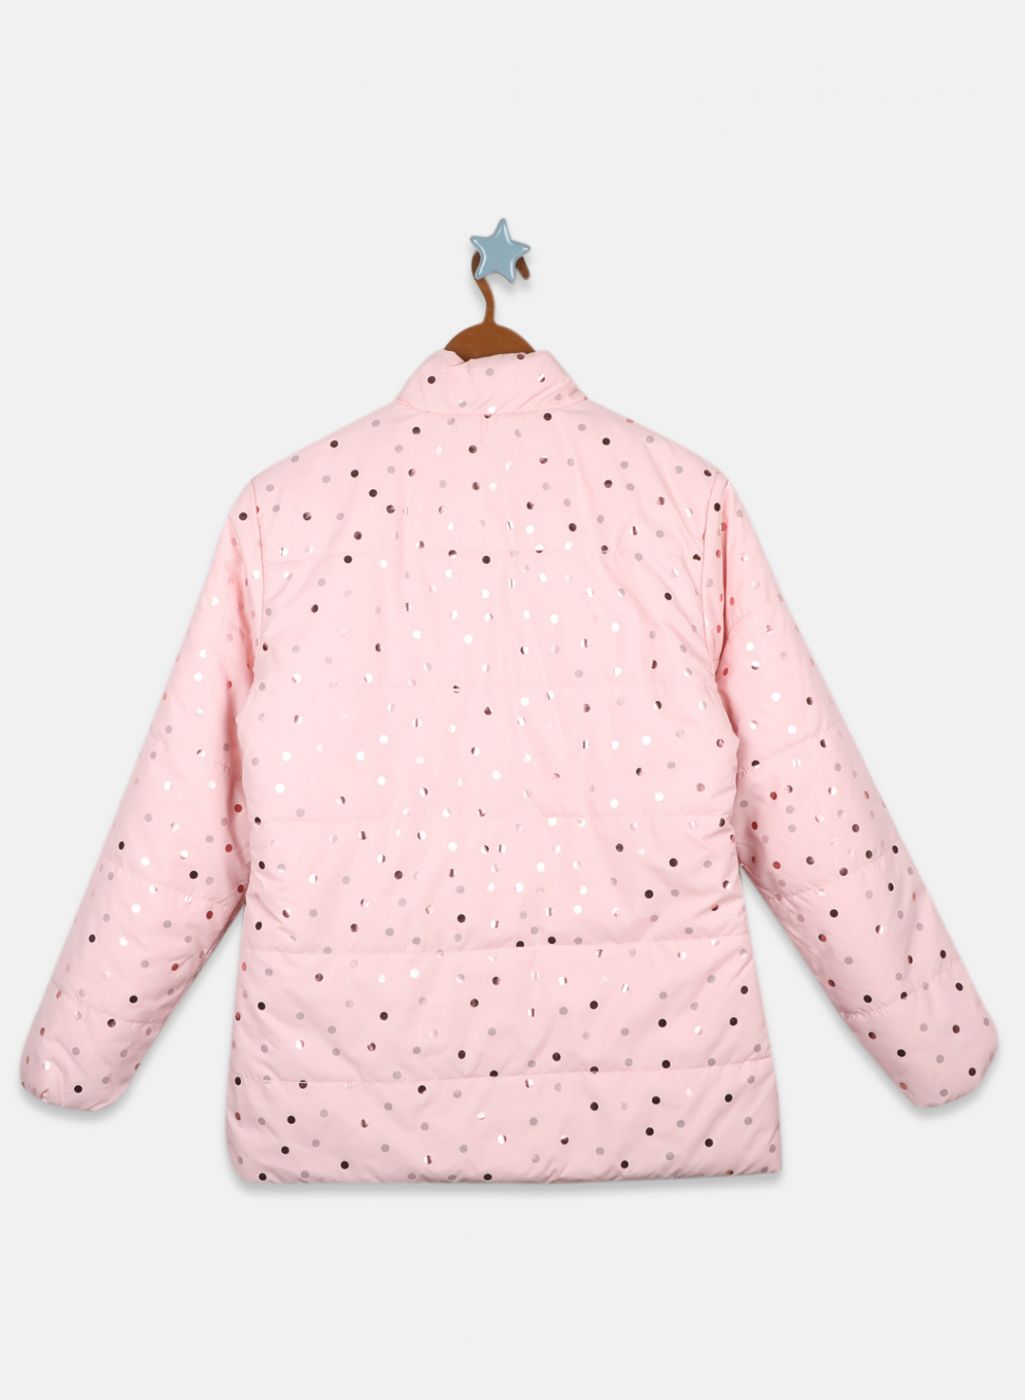 Girls Pink Reversible Printed Jacket